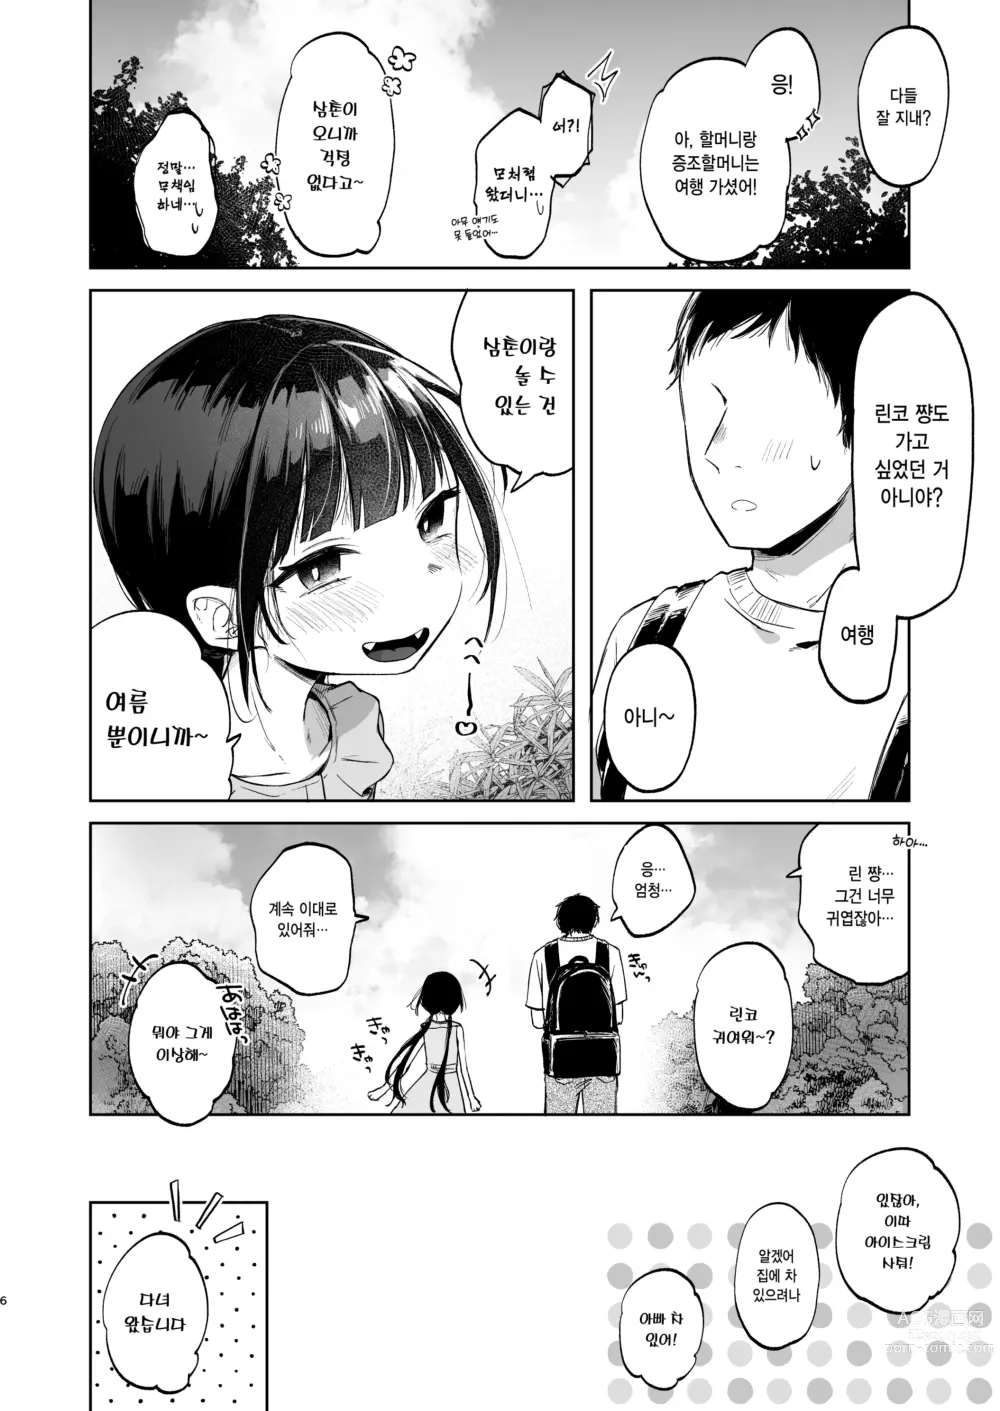 Page 6 of doujinshi 린코와 삼촌의 첫 여름방학